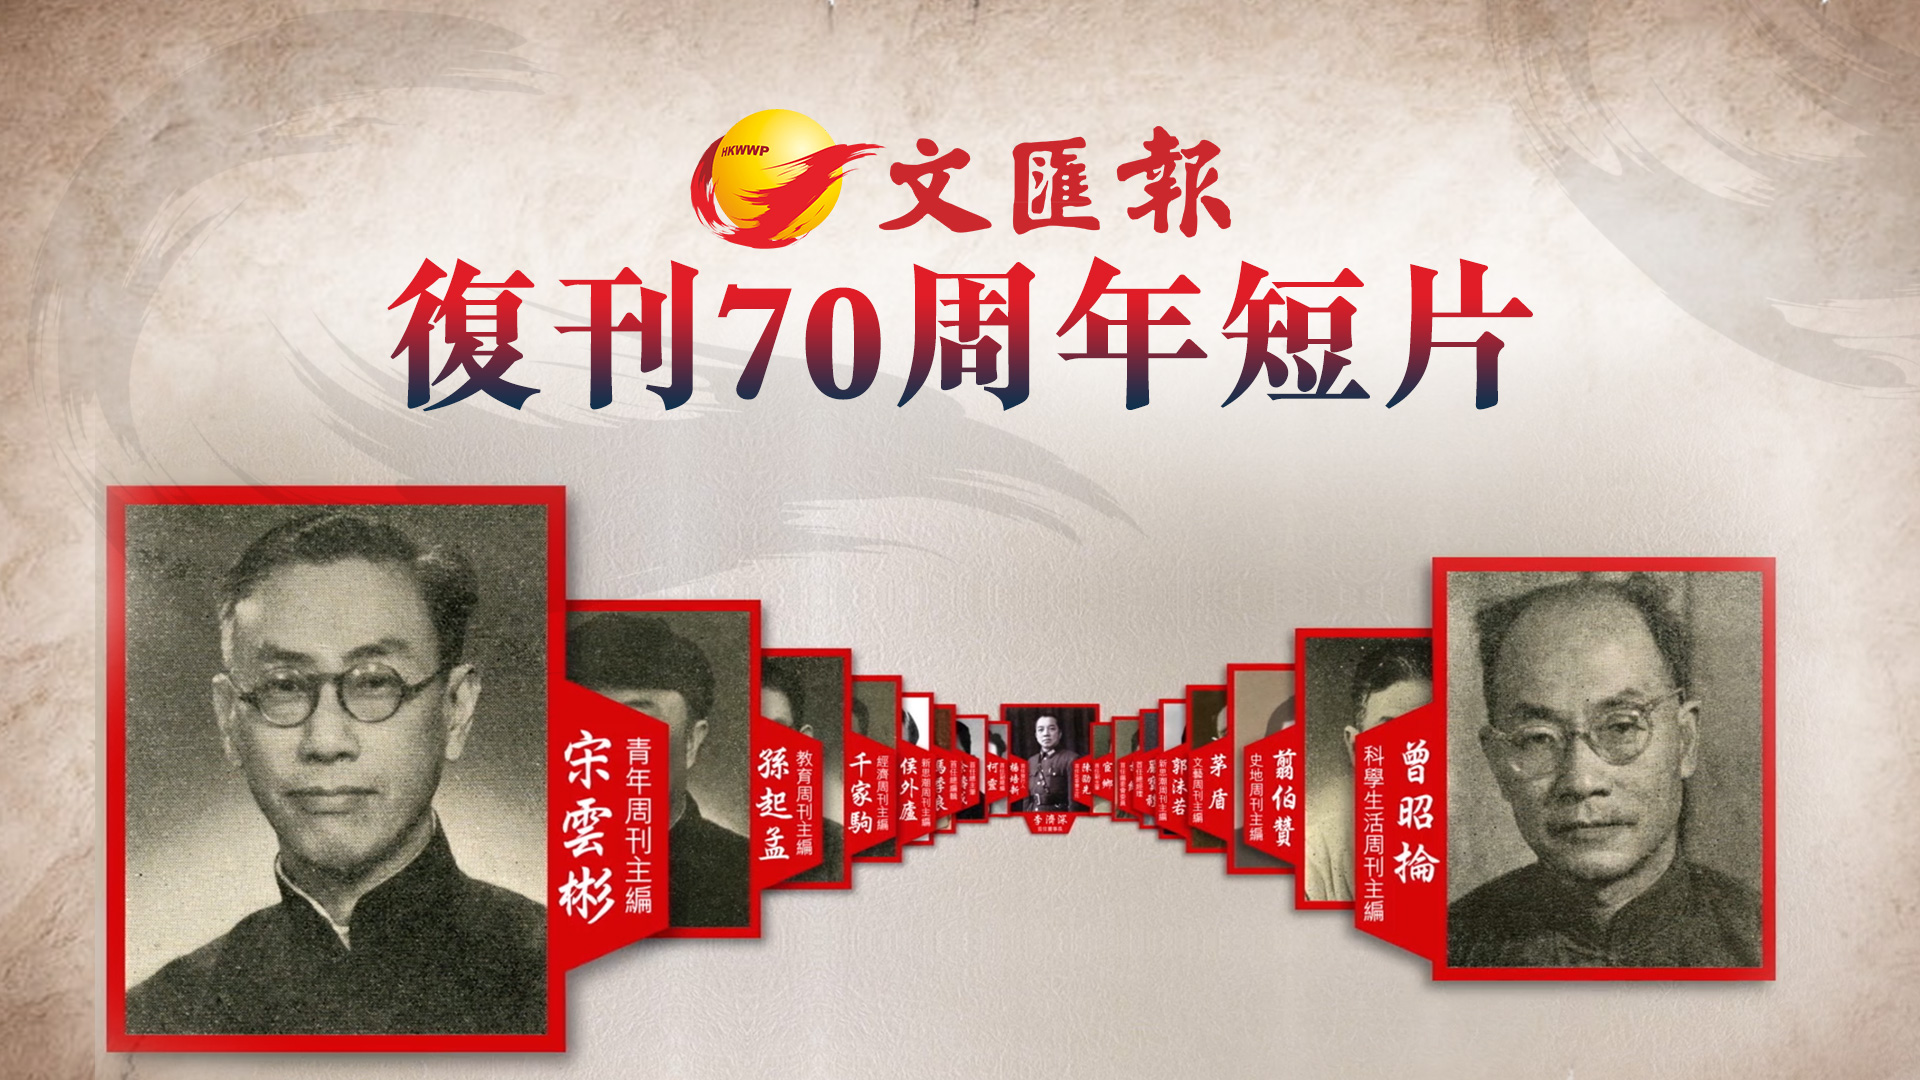 香港文匯報復刊70周年短片